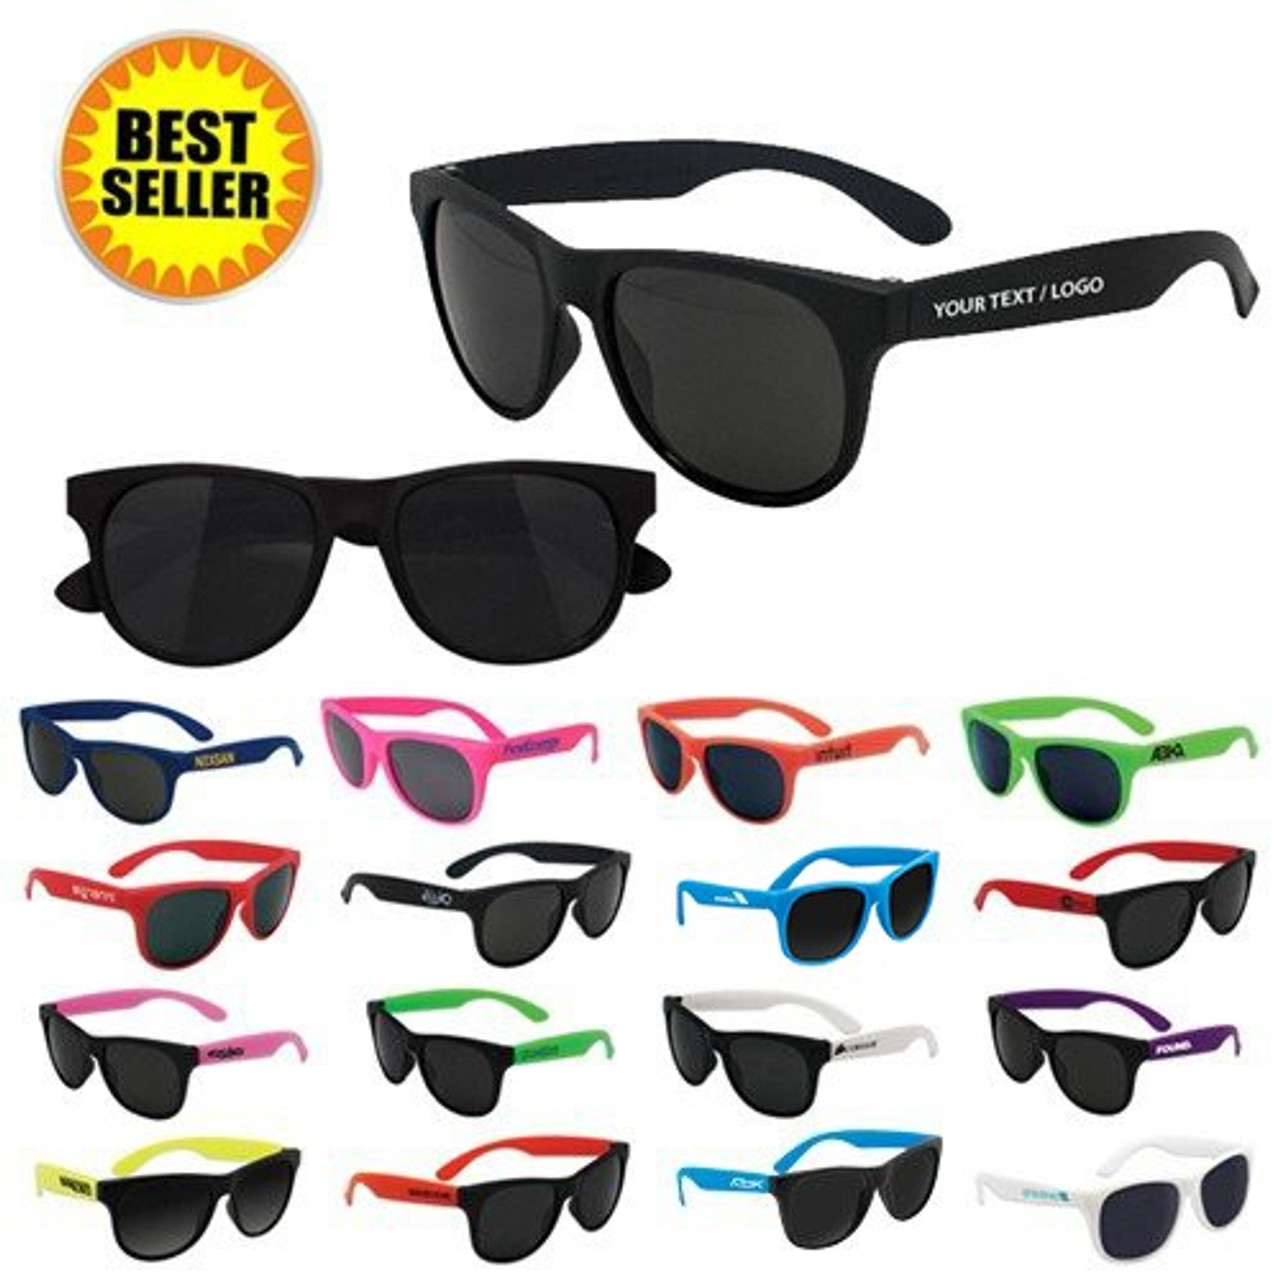 quality plastic custom logo sunglasses for| Alibaba.com